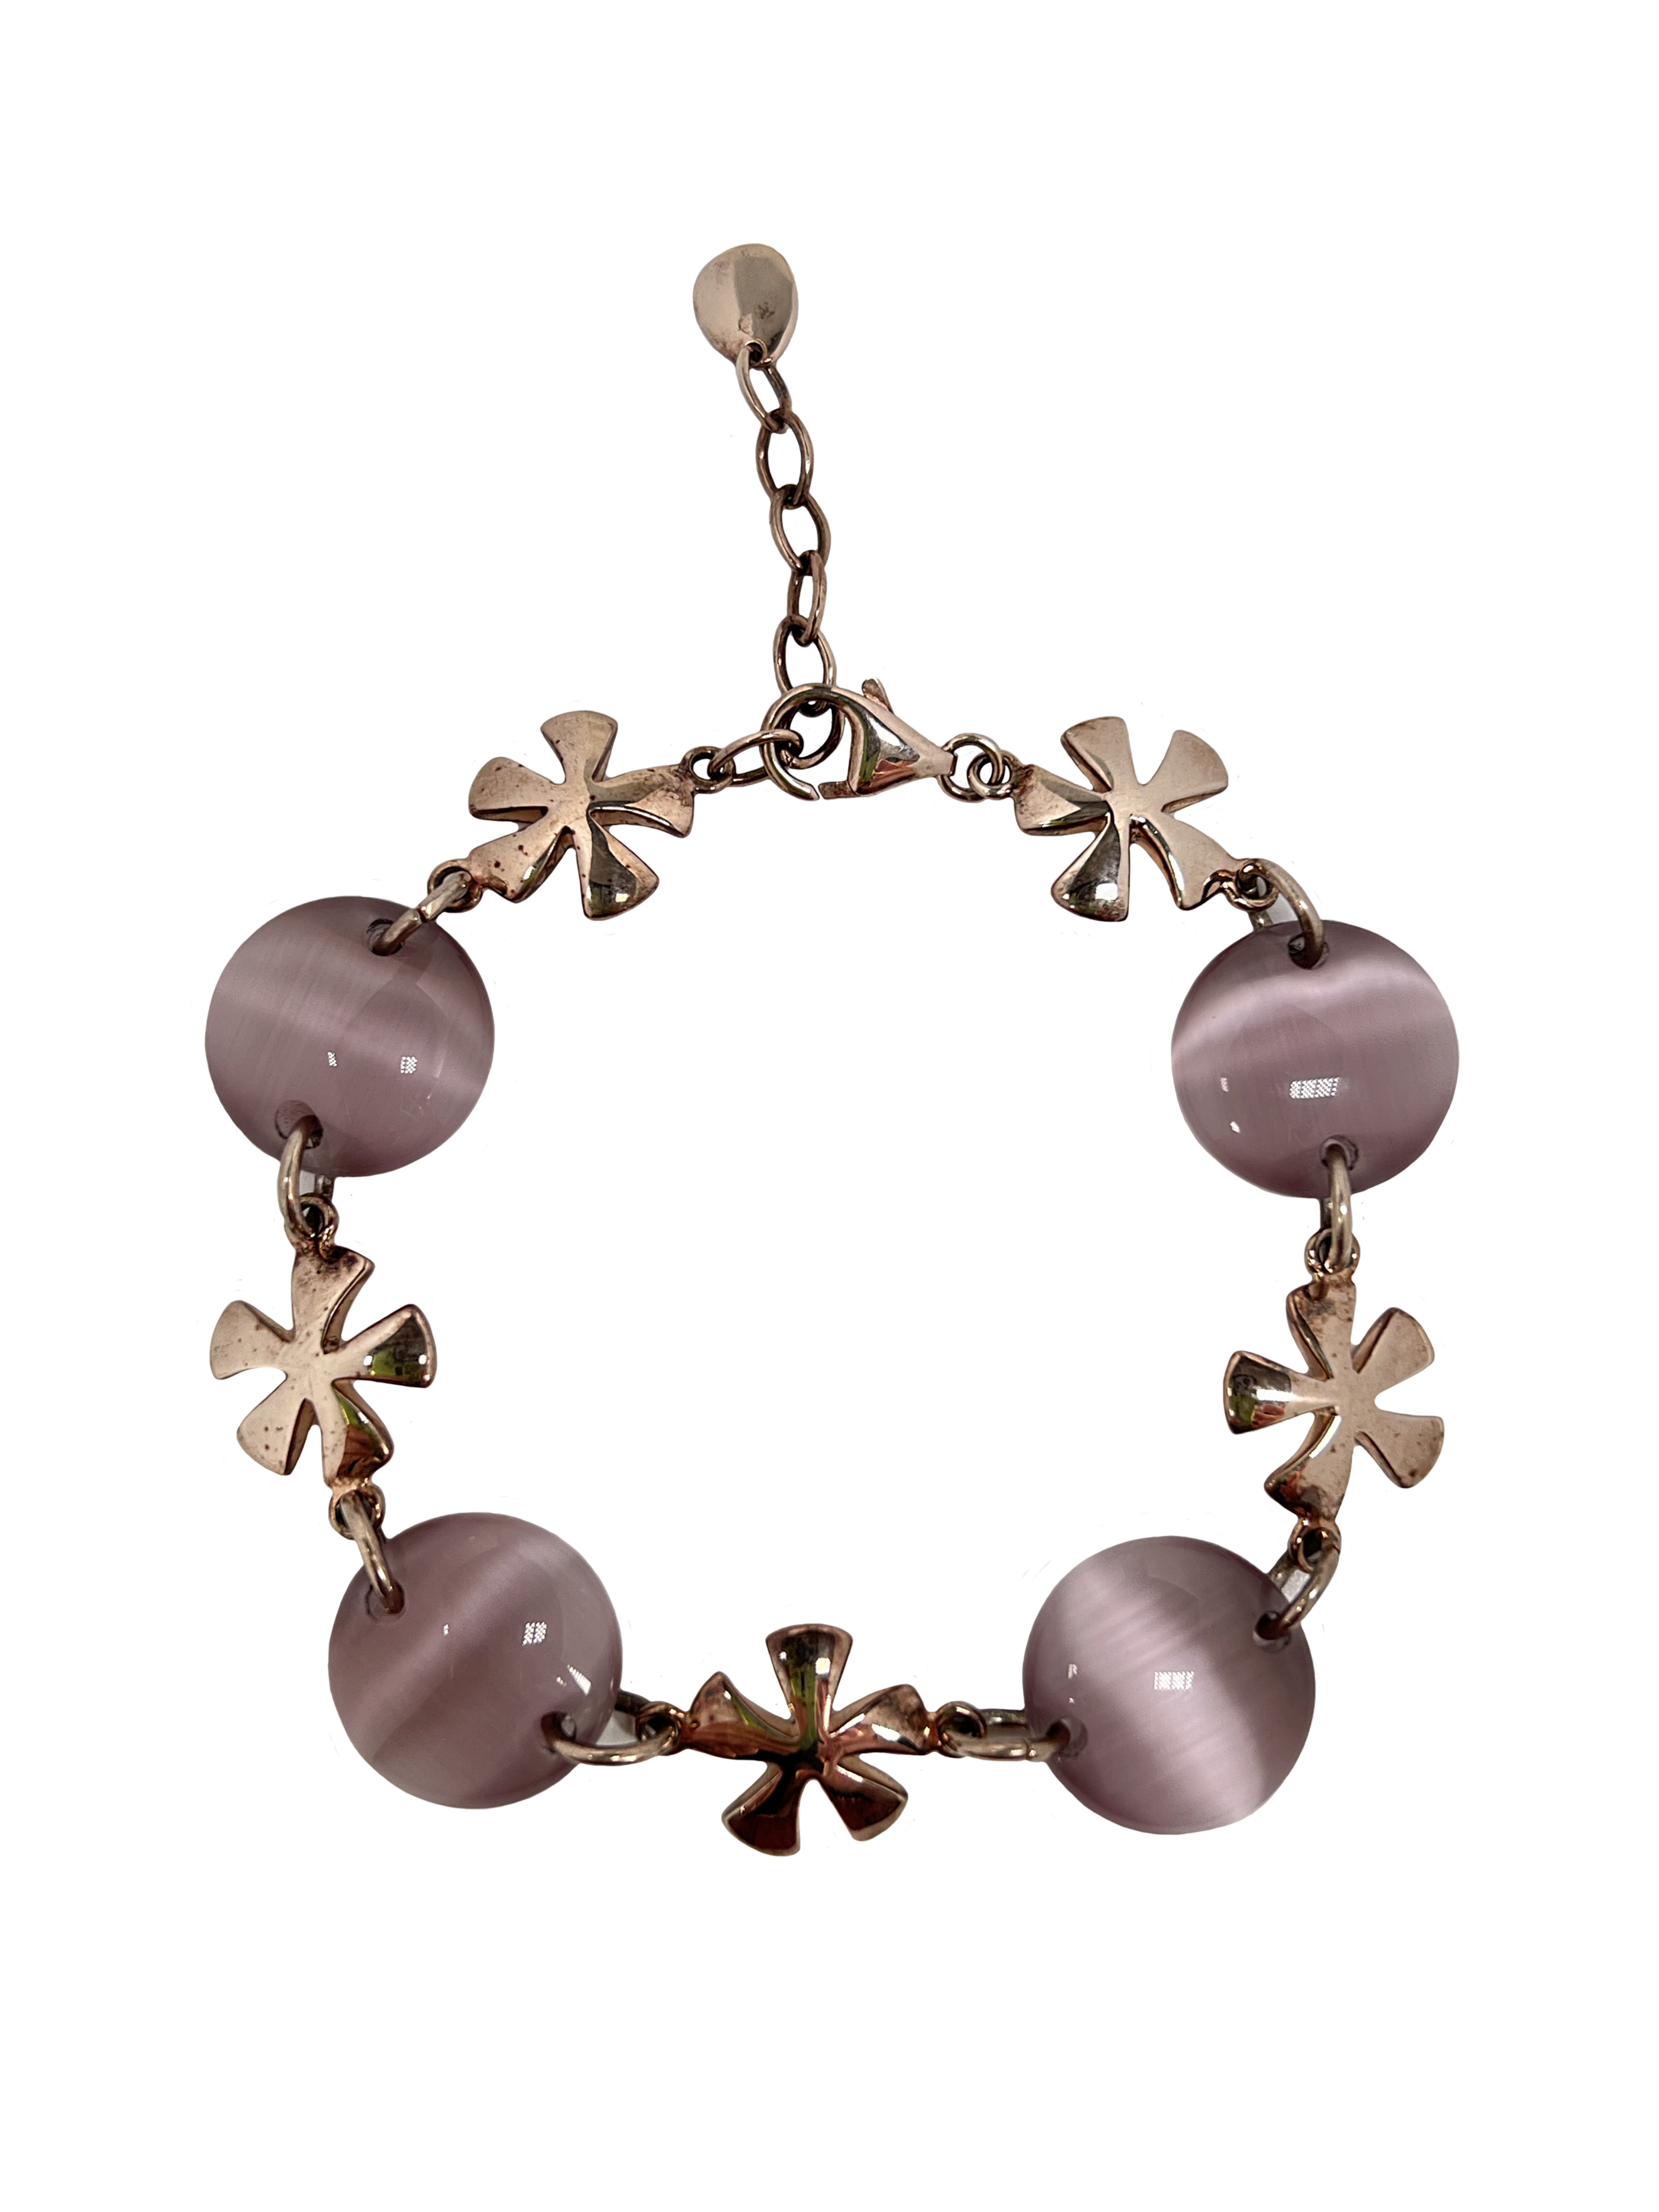 Bracelet en argent avec traitement de surface et pierres roses